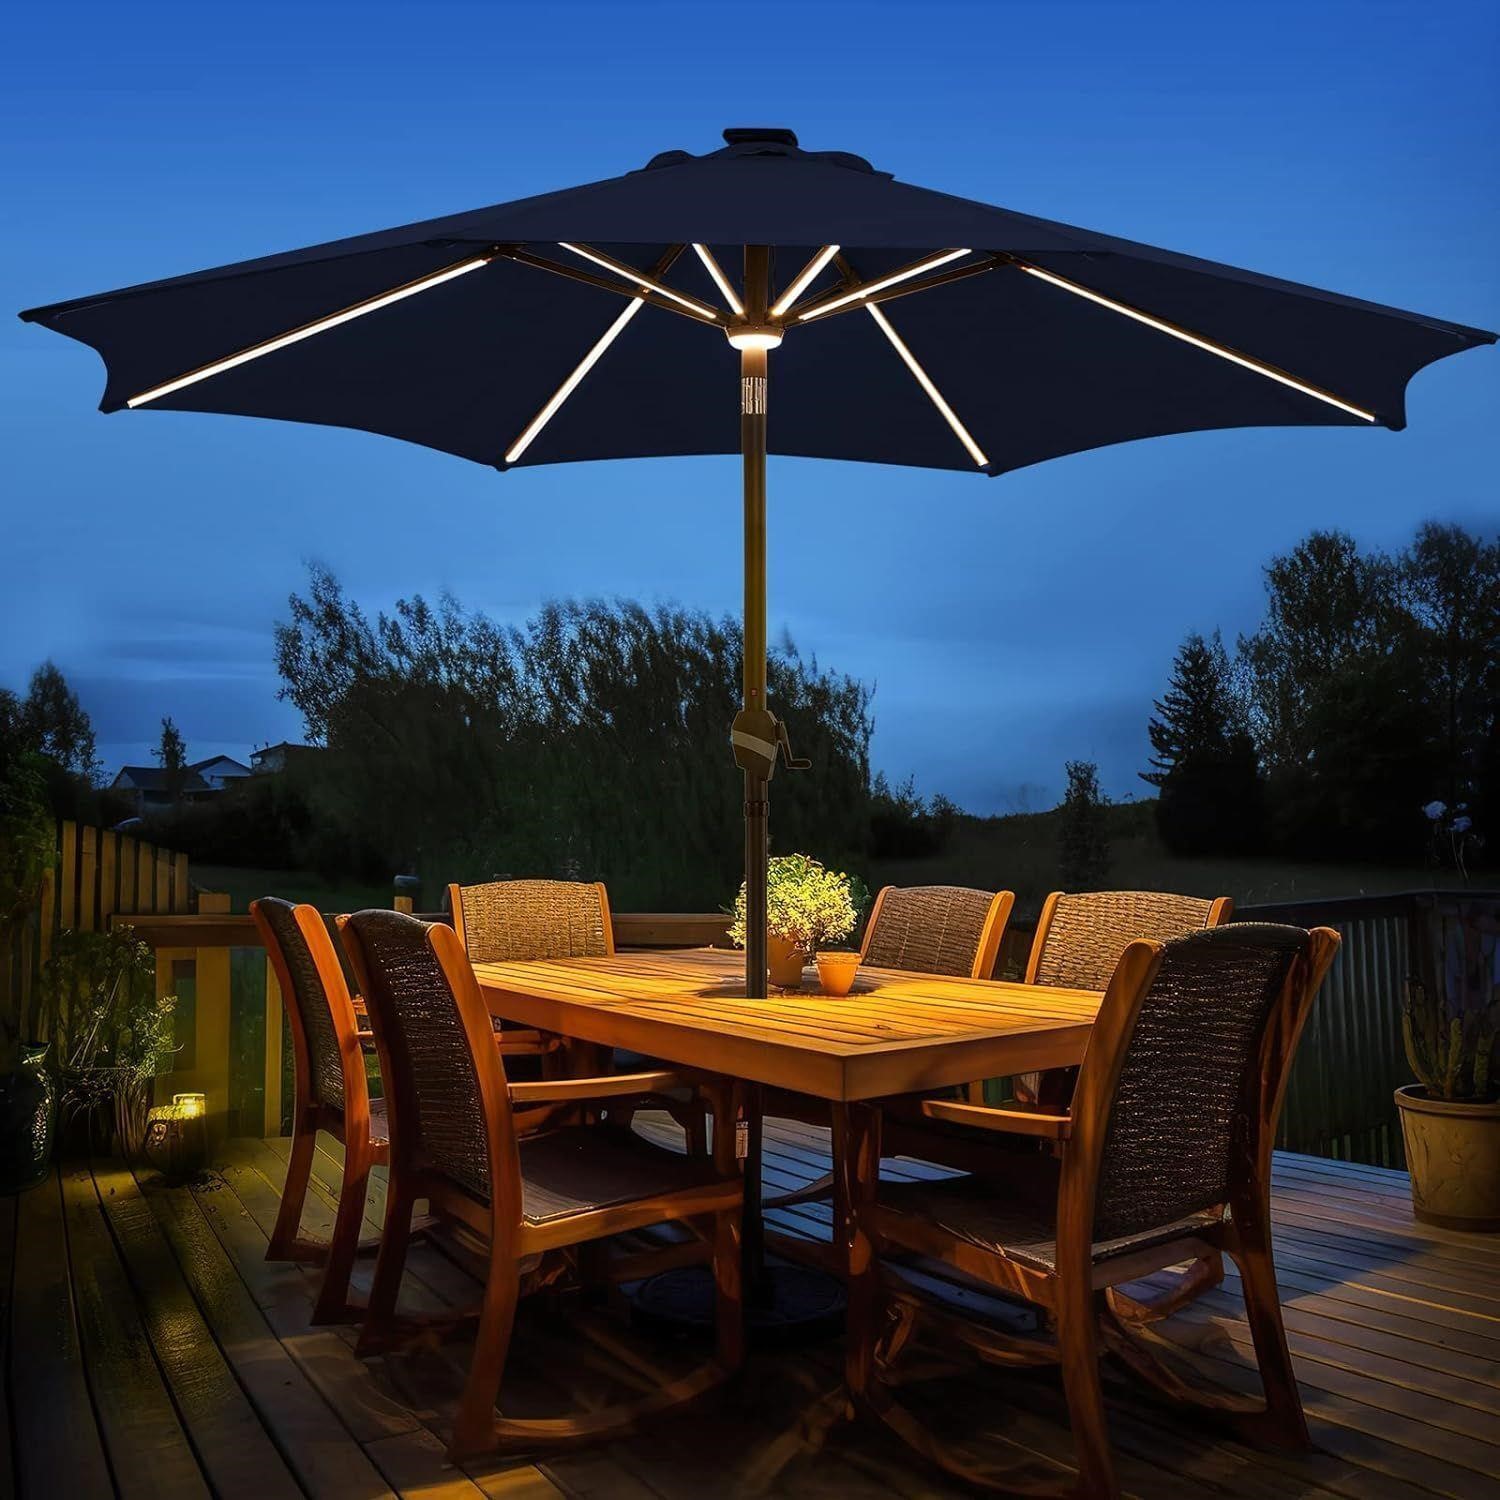 BLUU MAPLE 10 FT Outdoor Solar Patio Umbrellas,